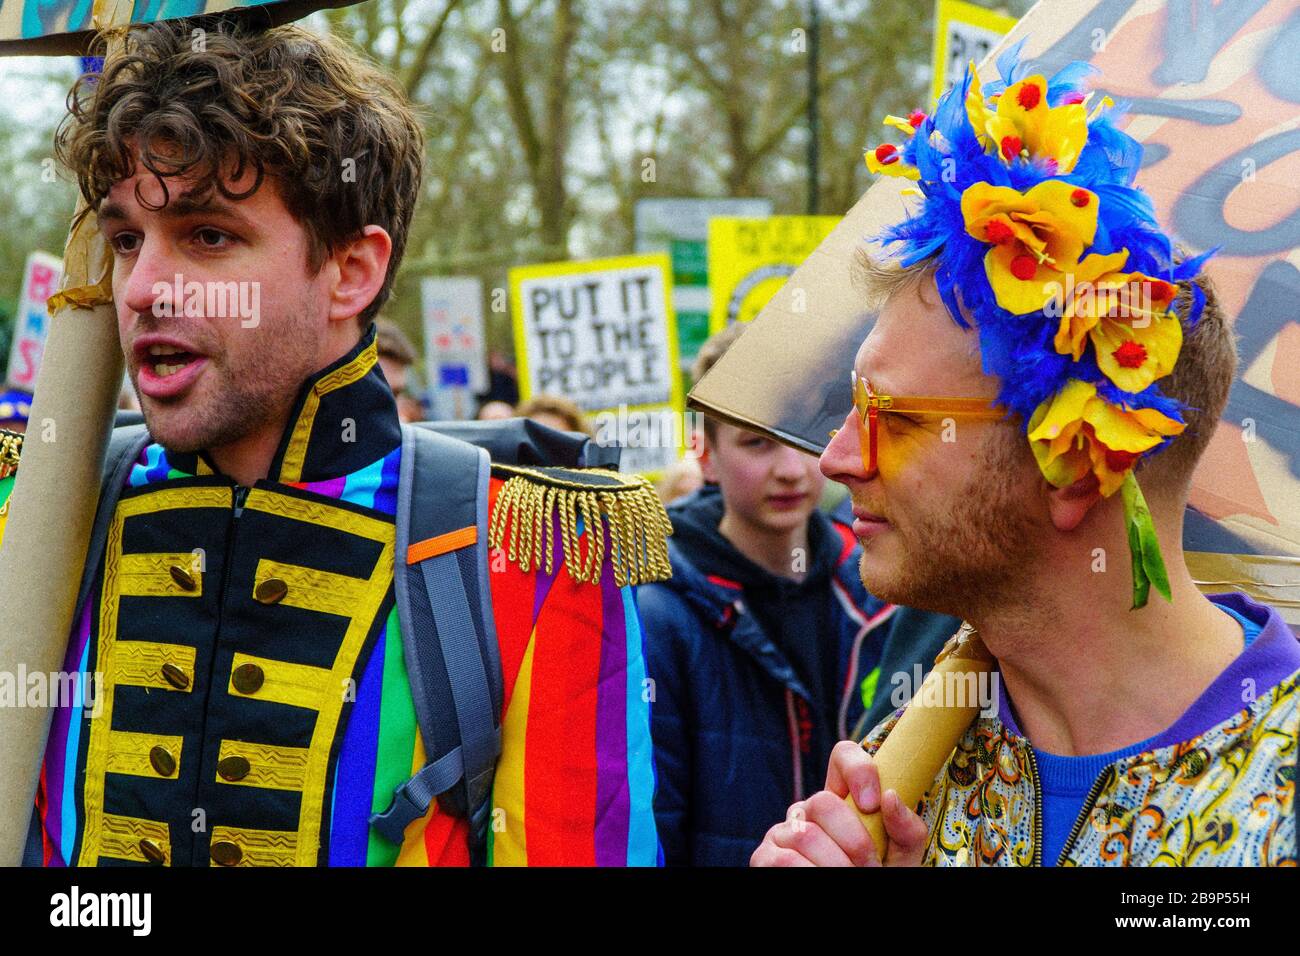 Manifestation du Brexit à Londres le 23/03/2019. La campagne "faites-la au peuple" dit que plus d'un million de personnes ont rejoint la marche. Banque D'Images